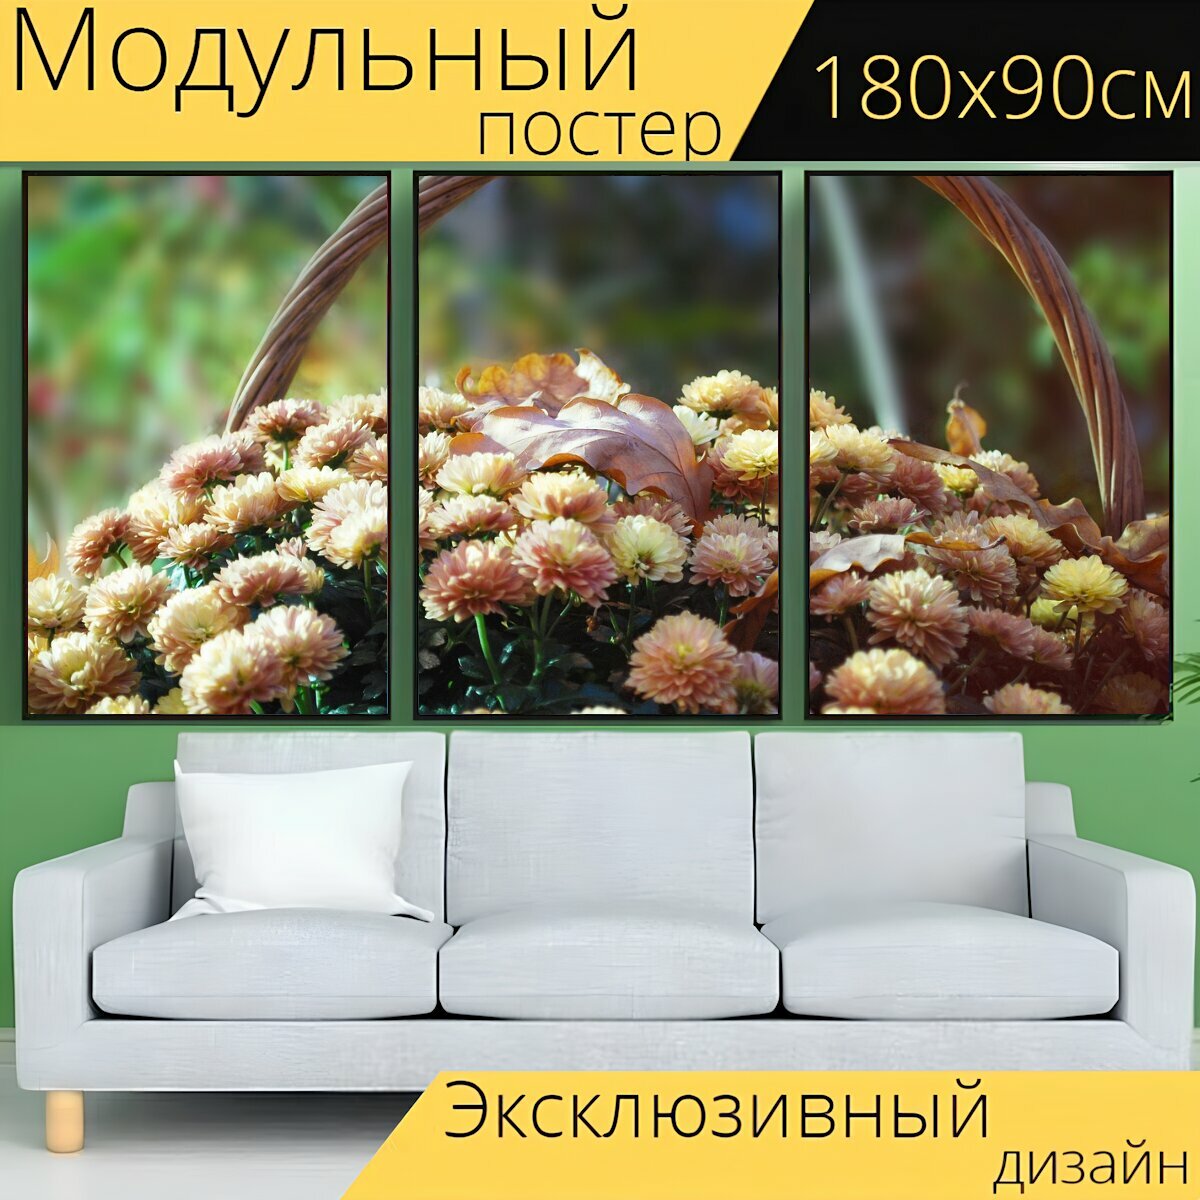 Модульный постер "Цветы, корзина, осень" 180 x 90 см. для интерьера